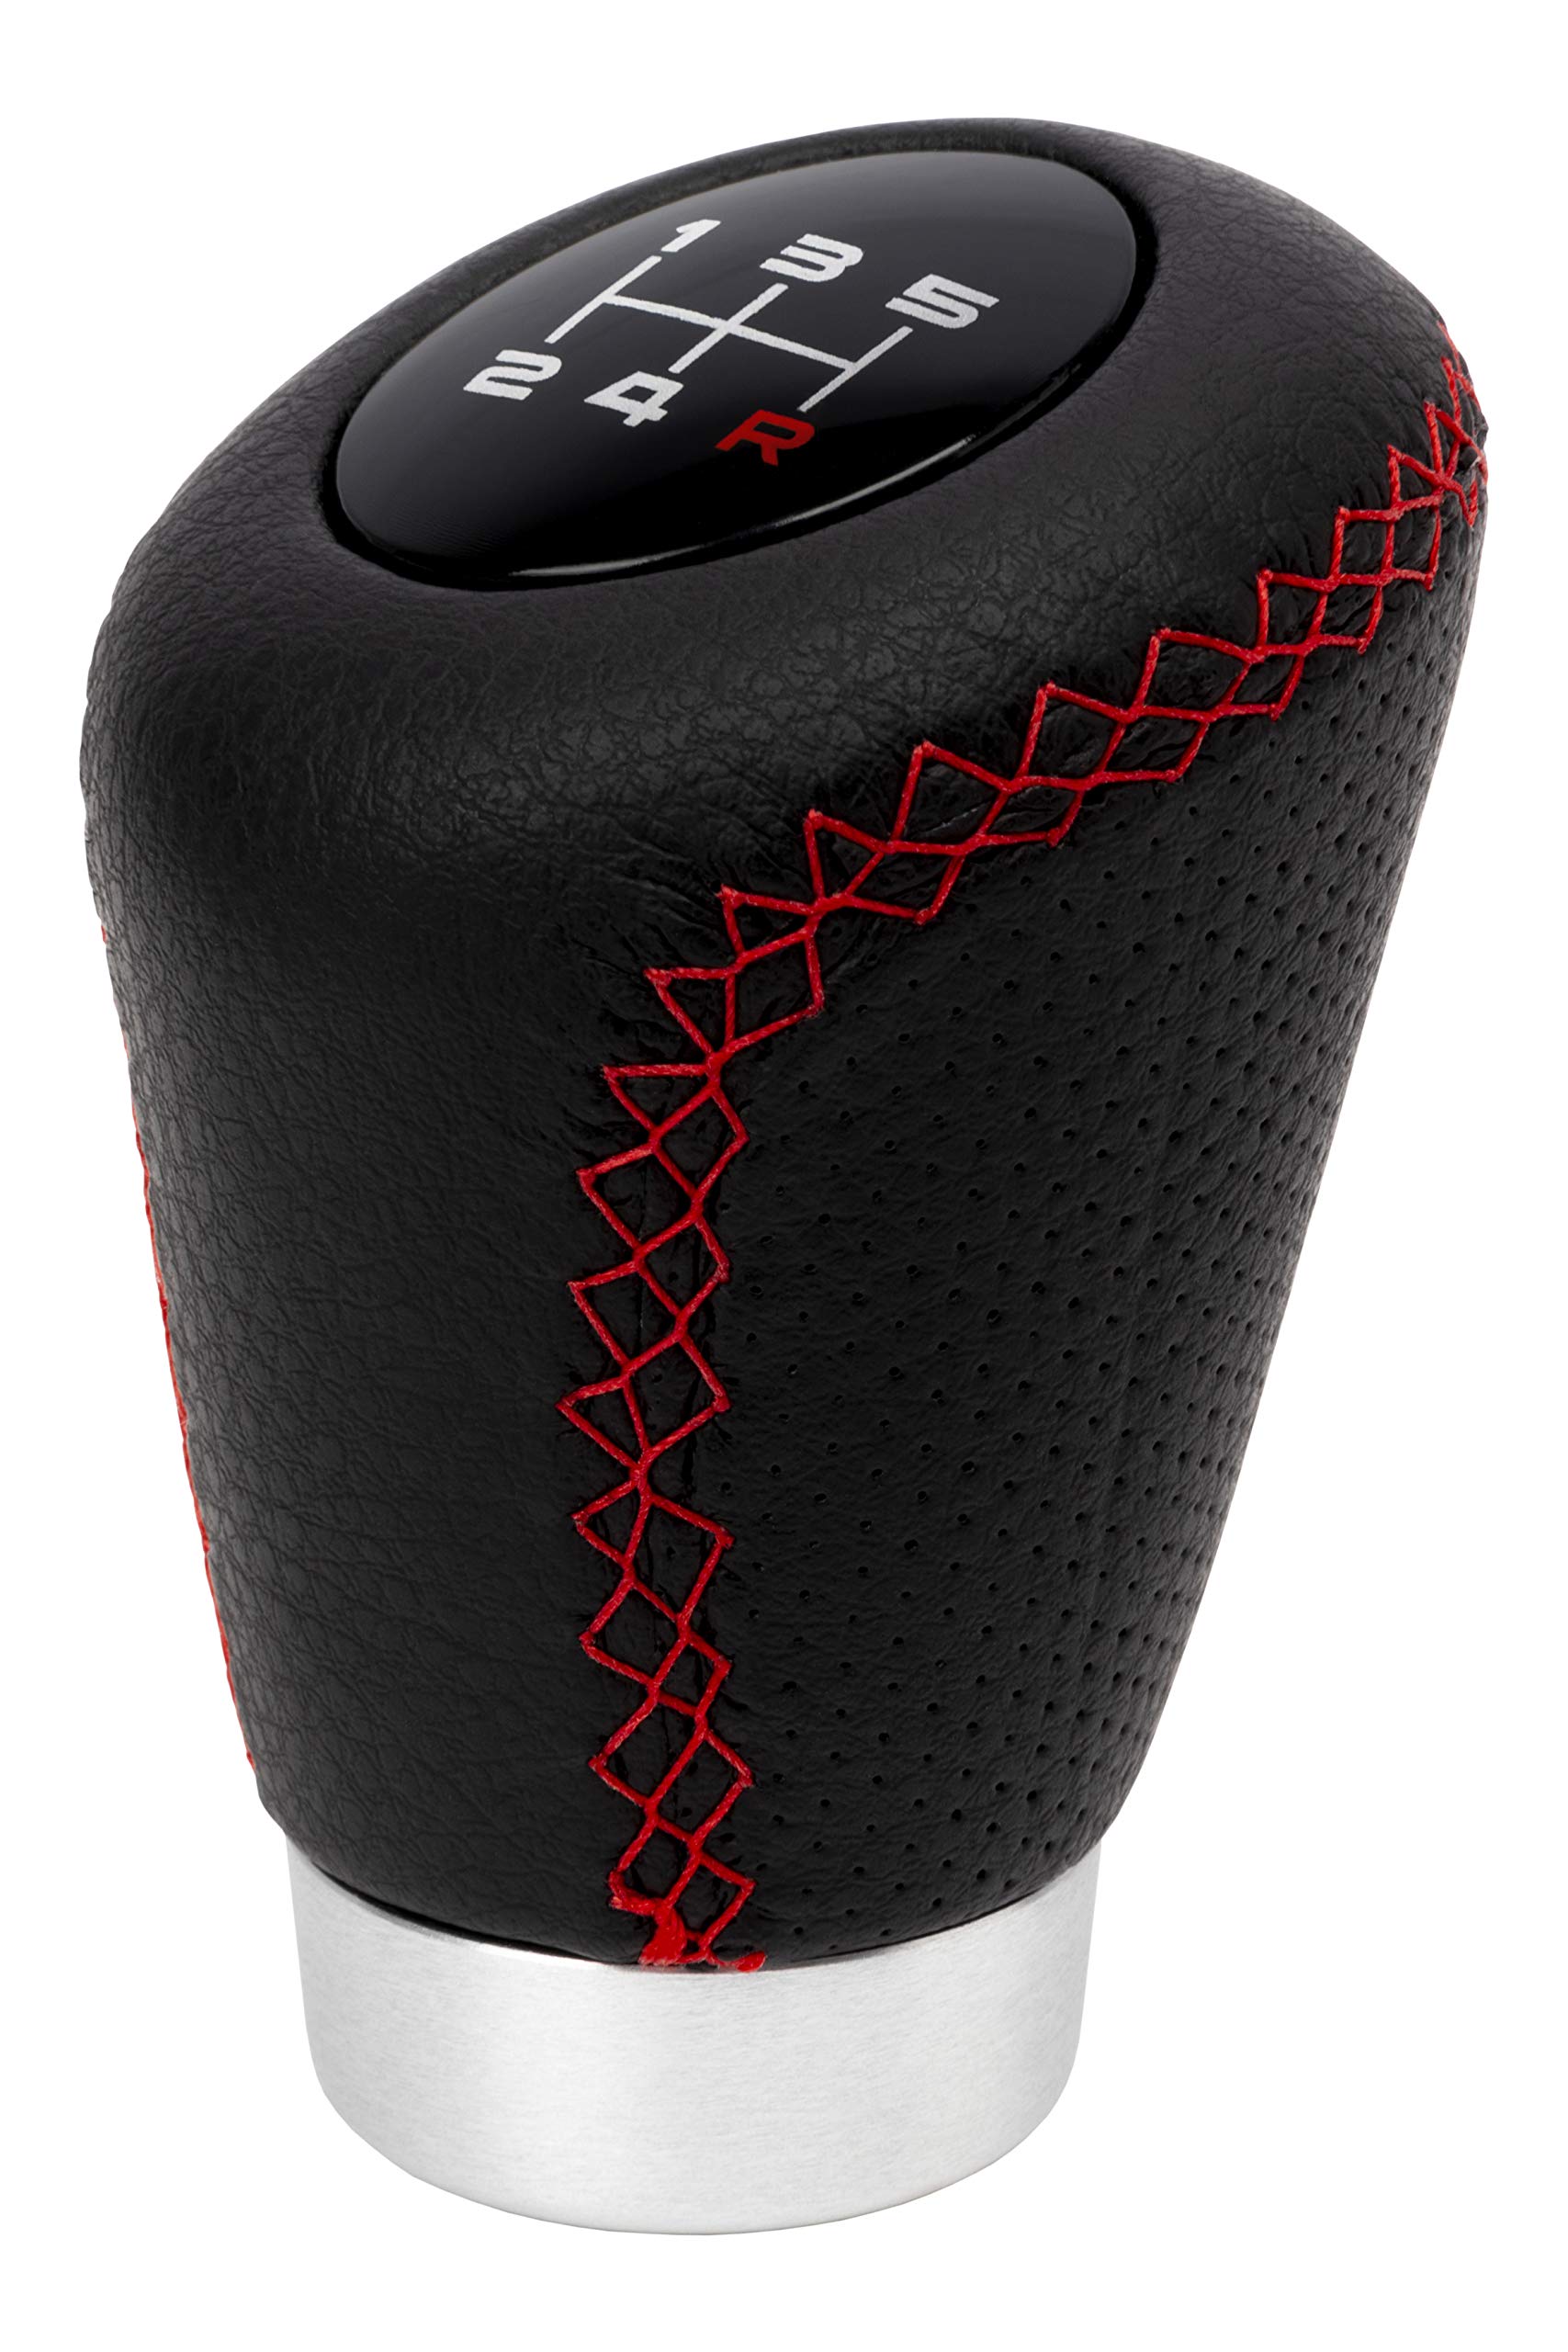 Bc Corona Sport - Kurzer Schaltknauf mit Abzug, 27 mm, Schalthebel, Leder, schwarz und rot.